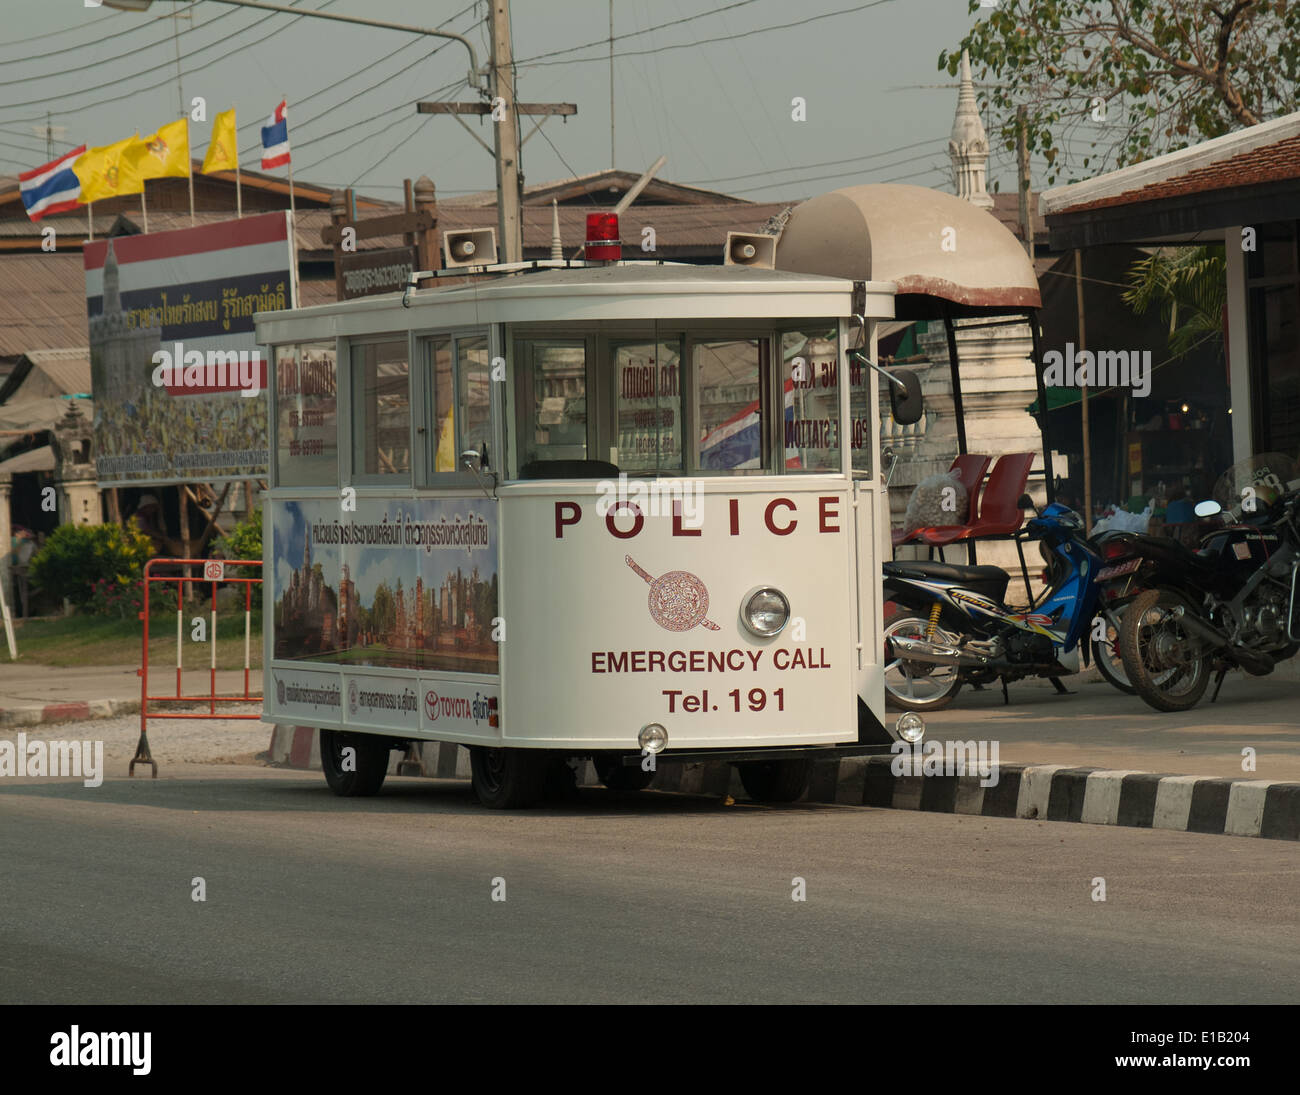 Voiture de police amusante repéré en Thaïlande Banque D'Images